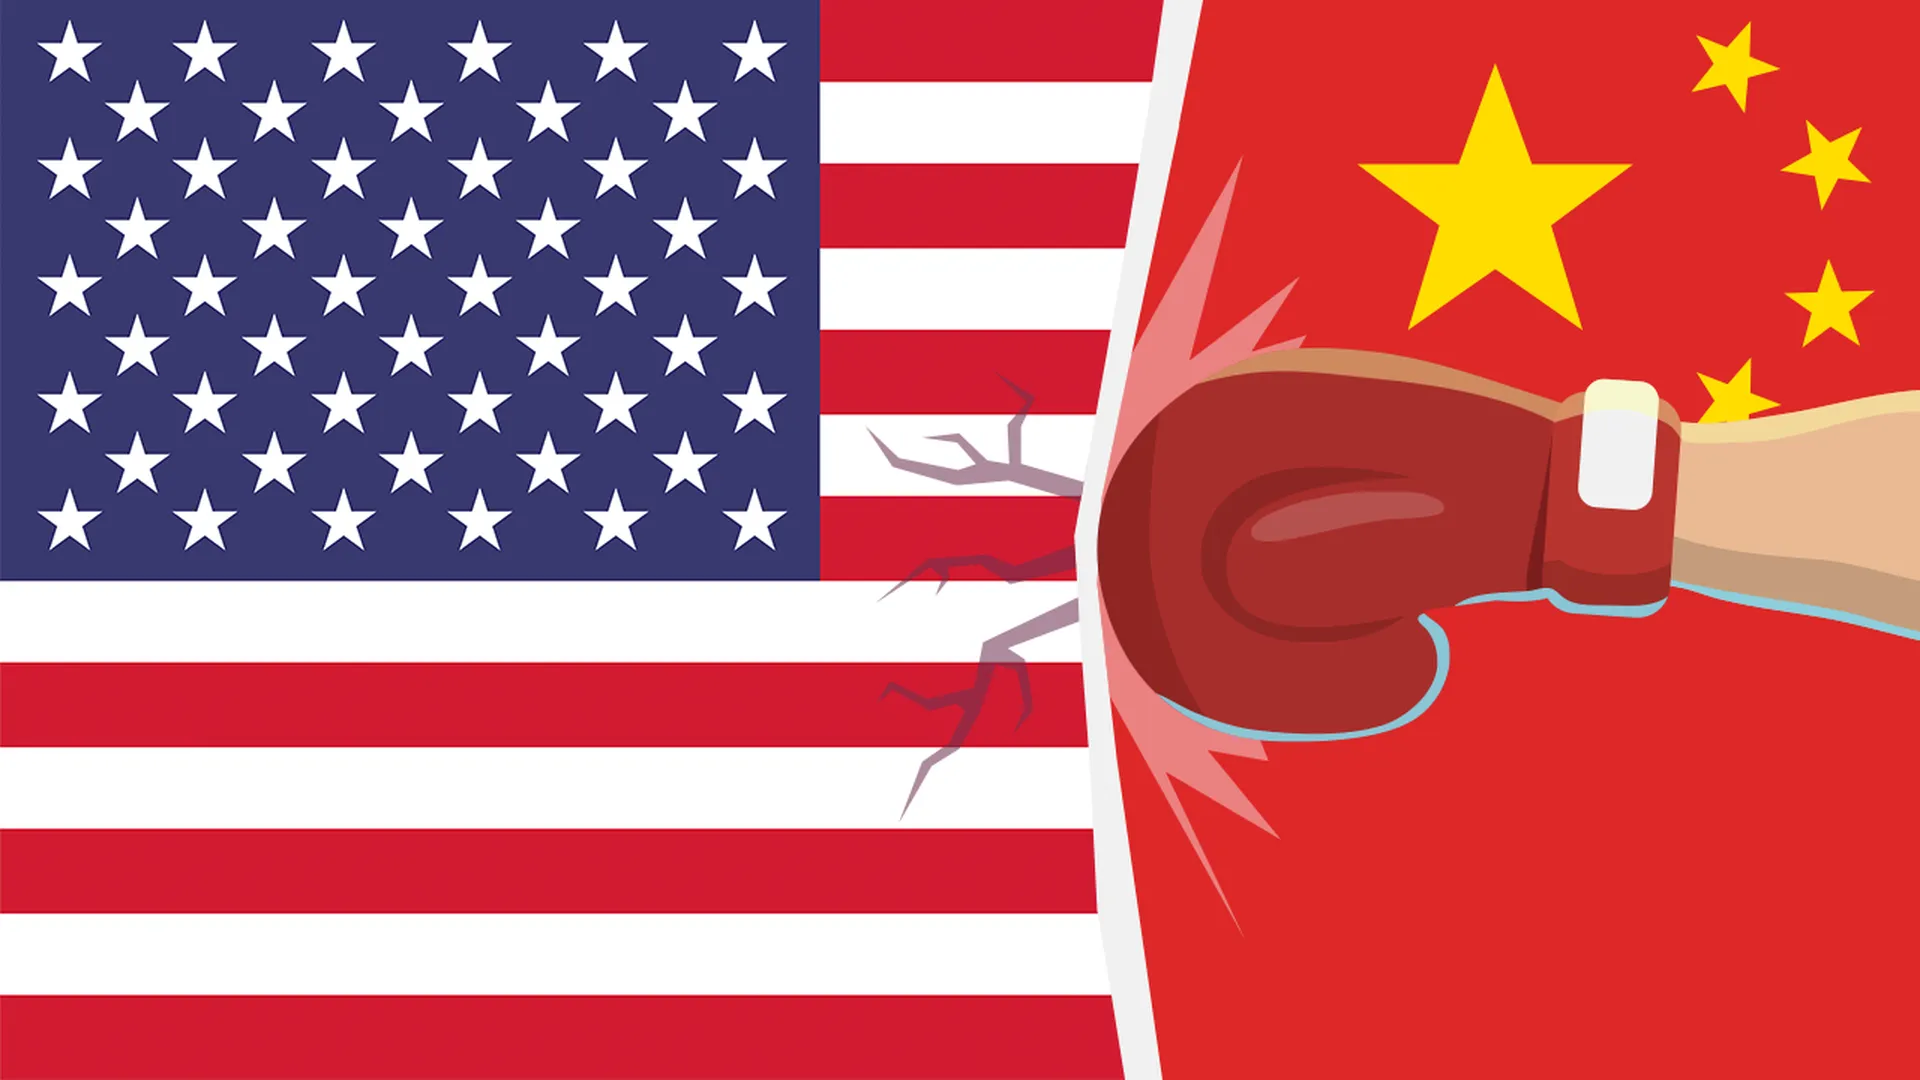 Коронавирус стал оружием США против Китая. Это приводит к расизму, от которого страдают простые люди